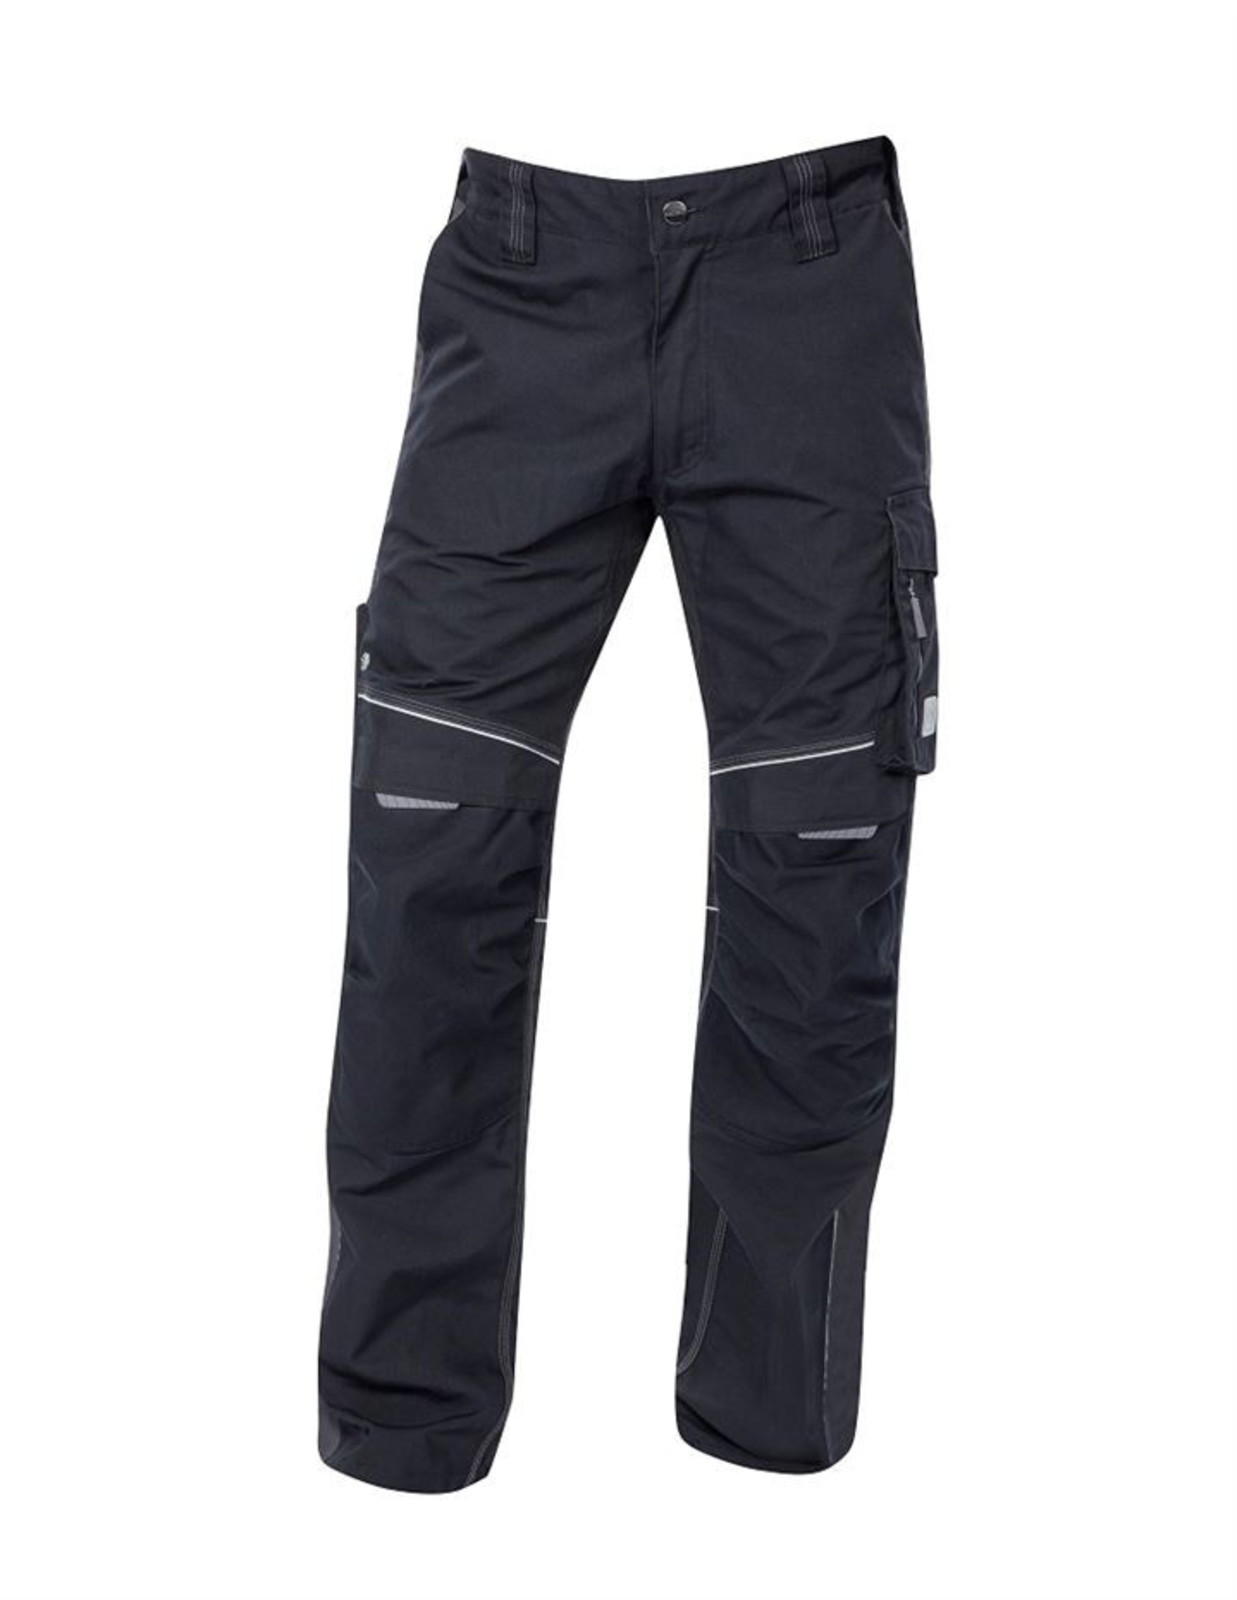 Pánske montérkové nohavice Ardon Urban+ - veľkosť: 48, farba: čierna/sivá